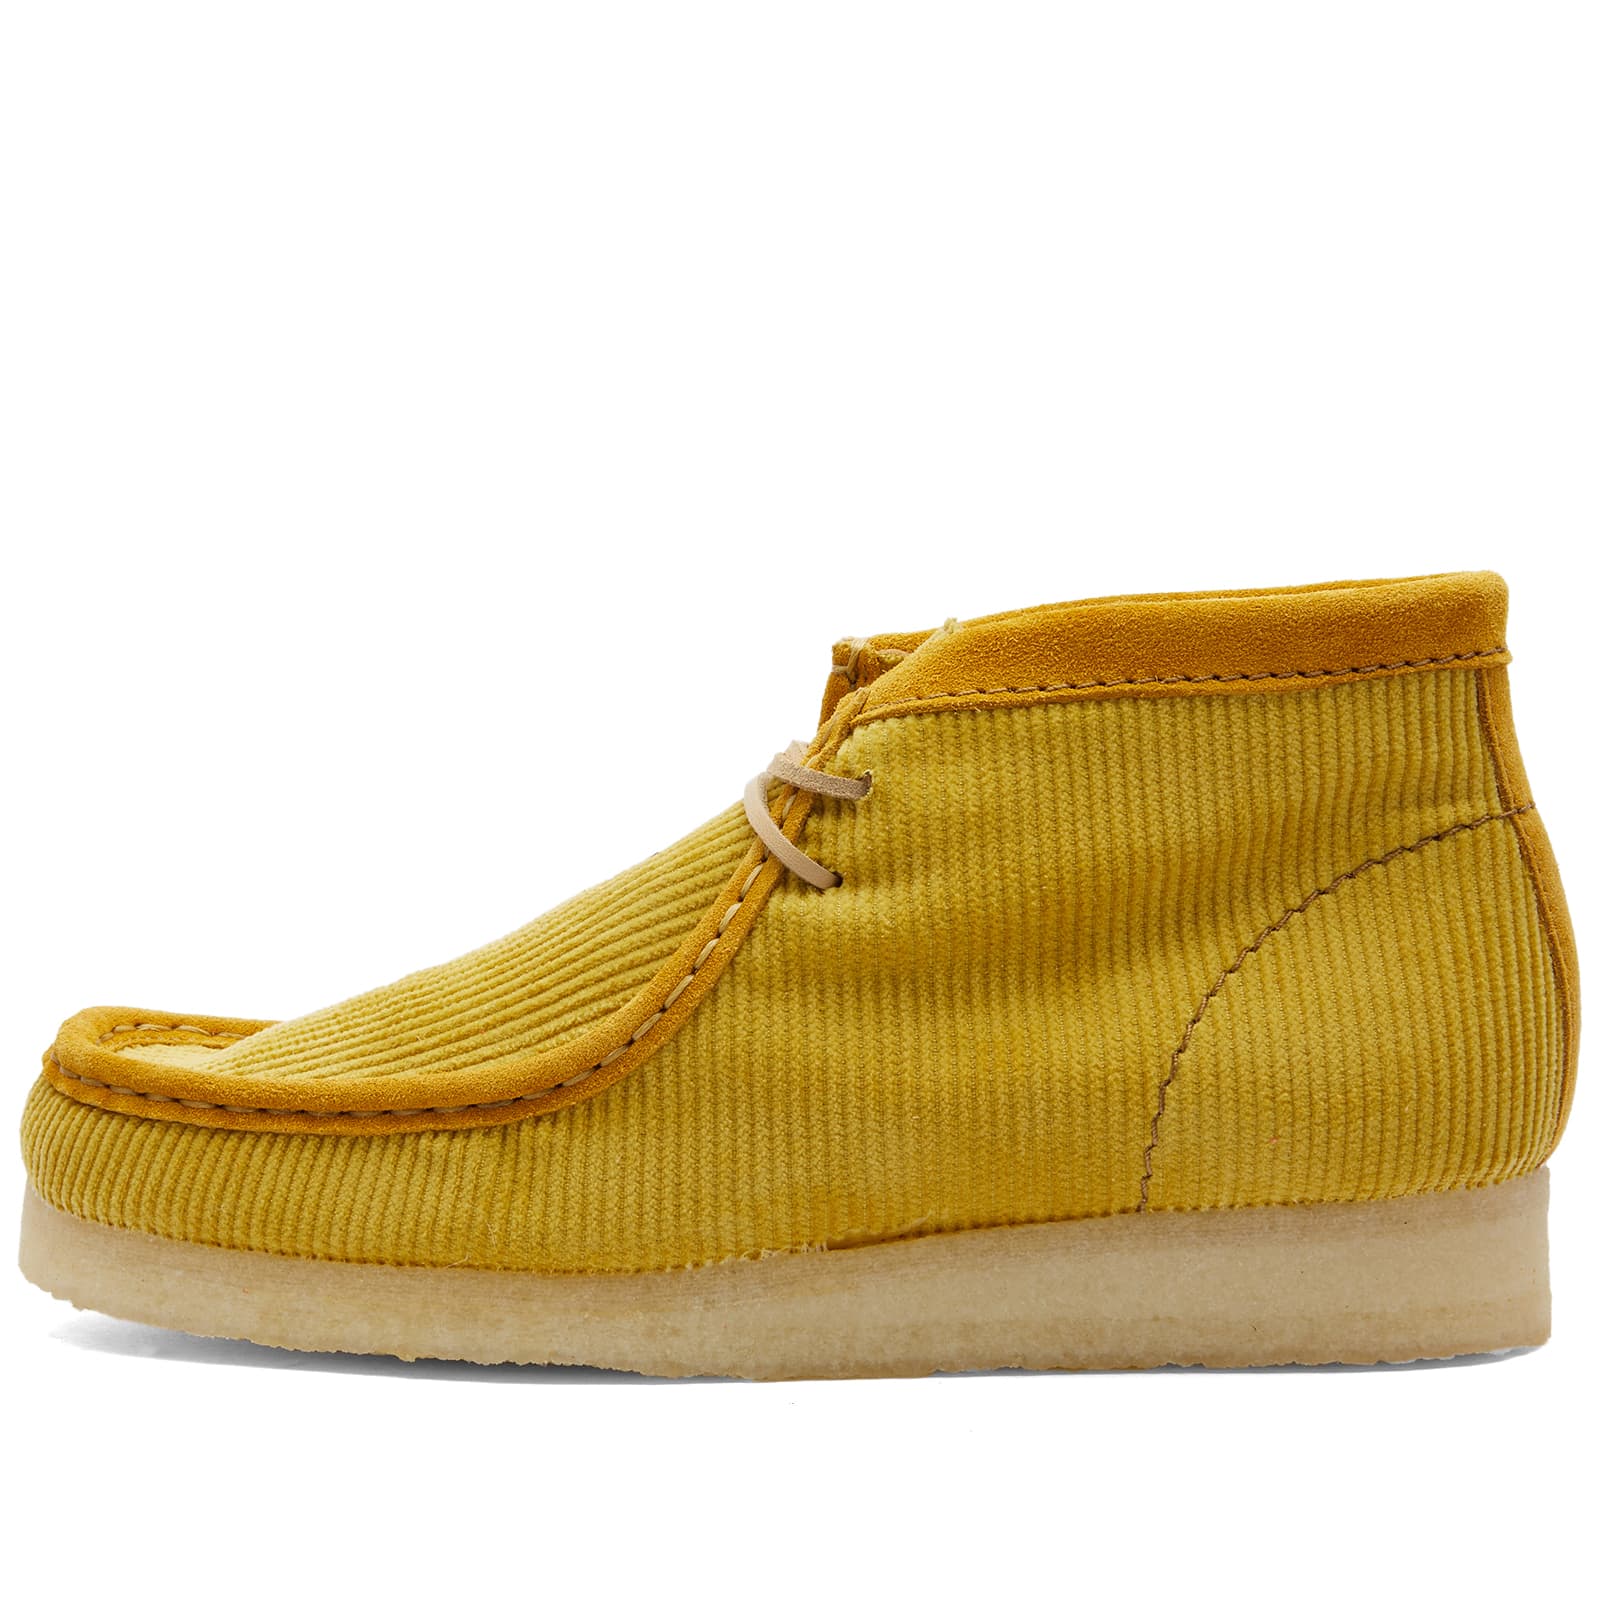 Ботинки Clarks Originals Mayde Wallabee, желтый ботинки clarks originals trek wedge черный